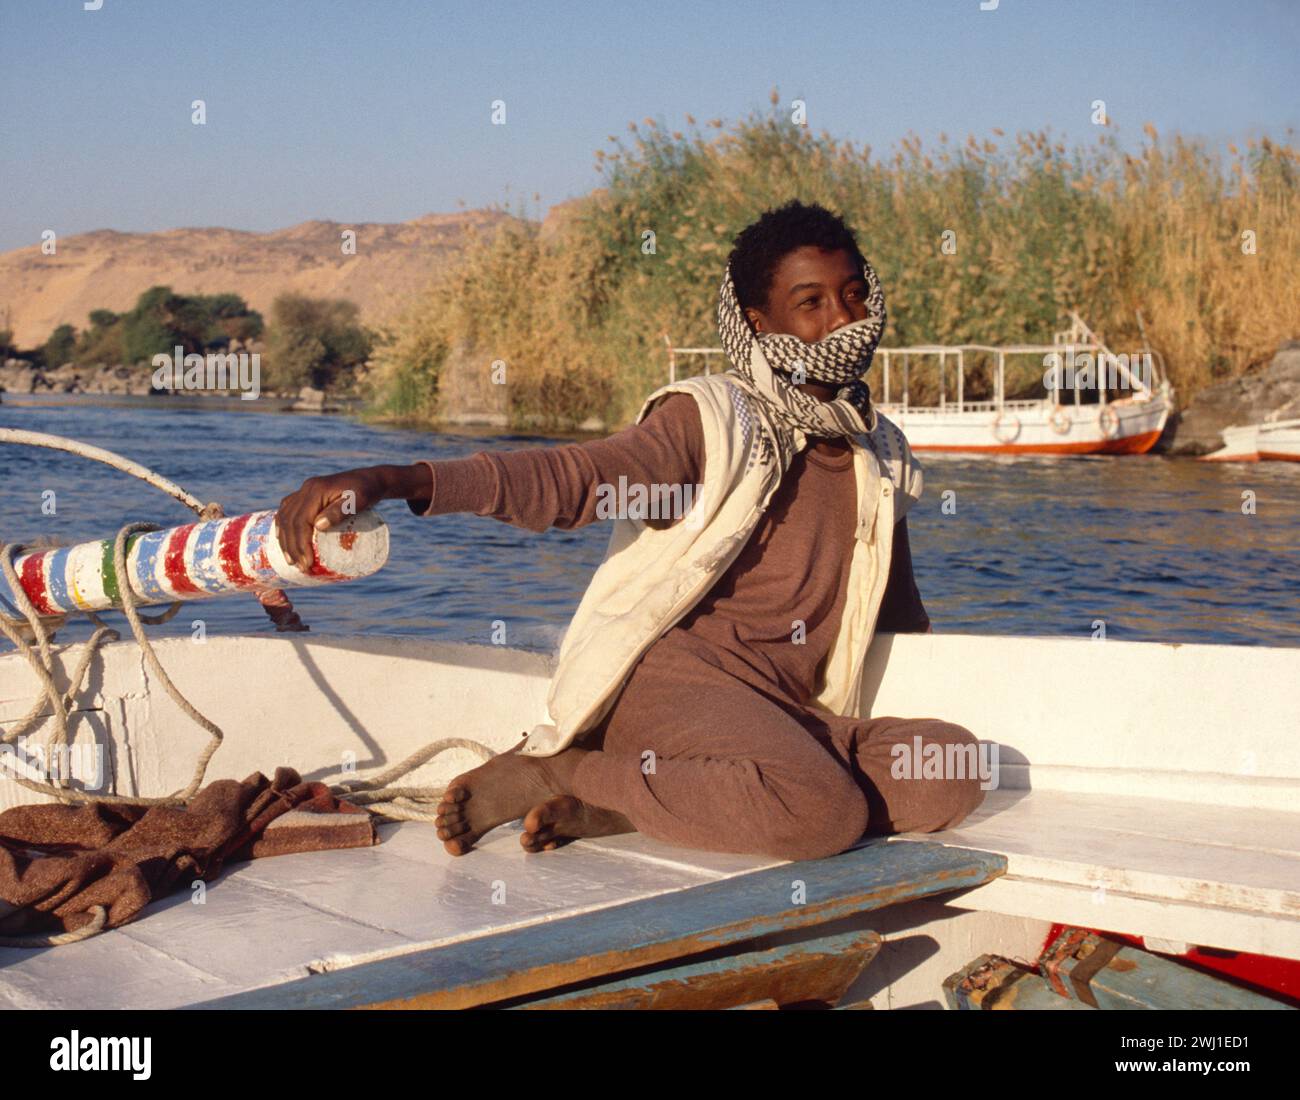 Égypte. Assouan. Garçon nubien à Tiller of Felucca voilier sur le Nil. Banque D'Images